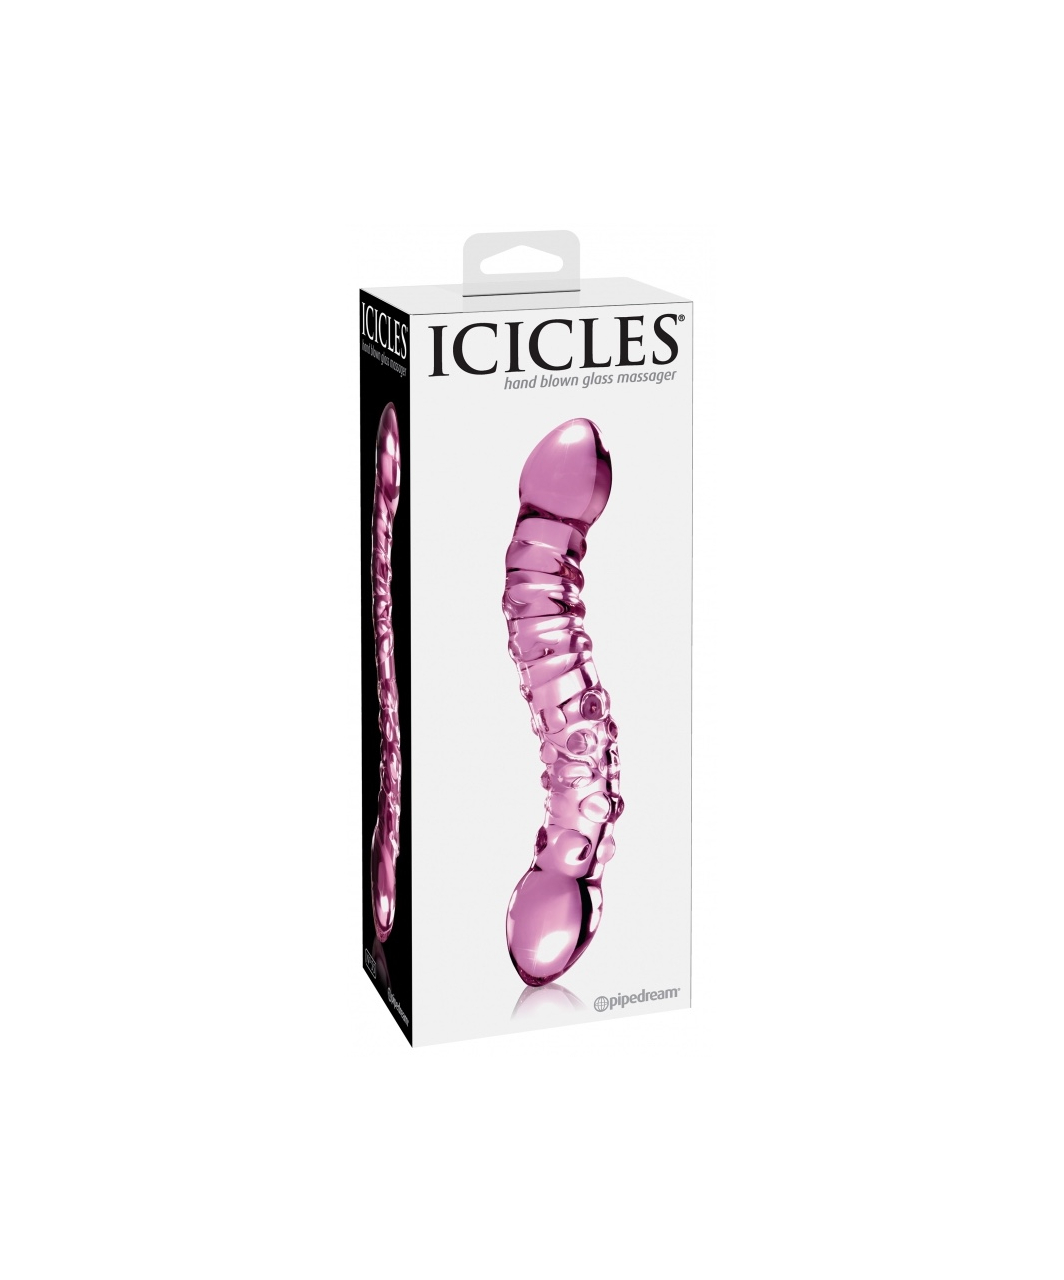 Icicles No. 55 glass dildo